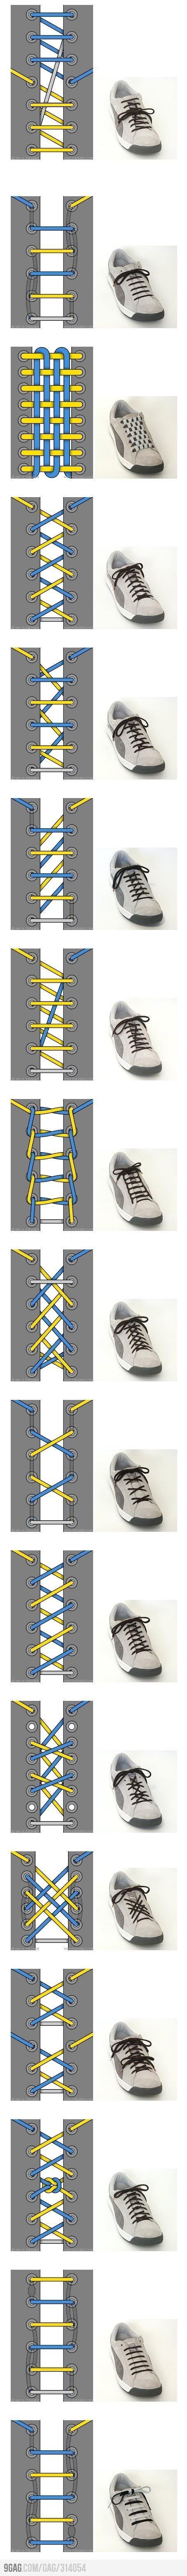 17 Cara Mengikat Tali Sepatu (Infographic)